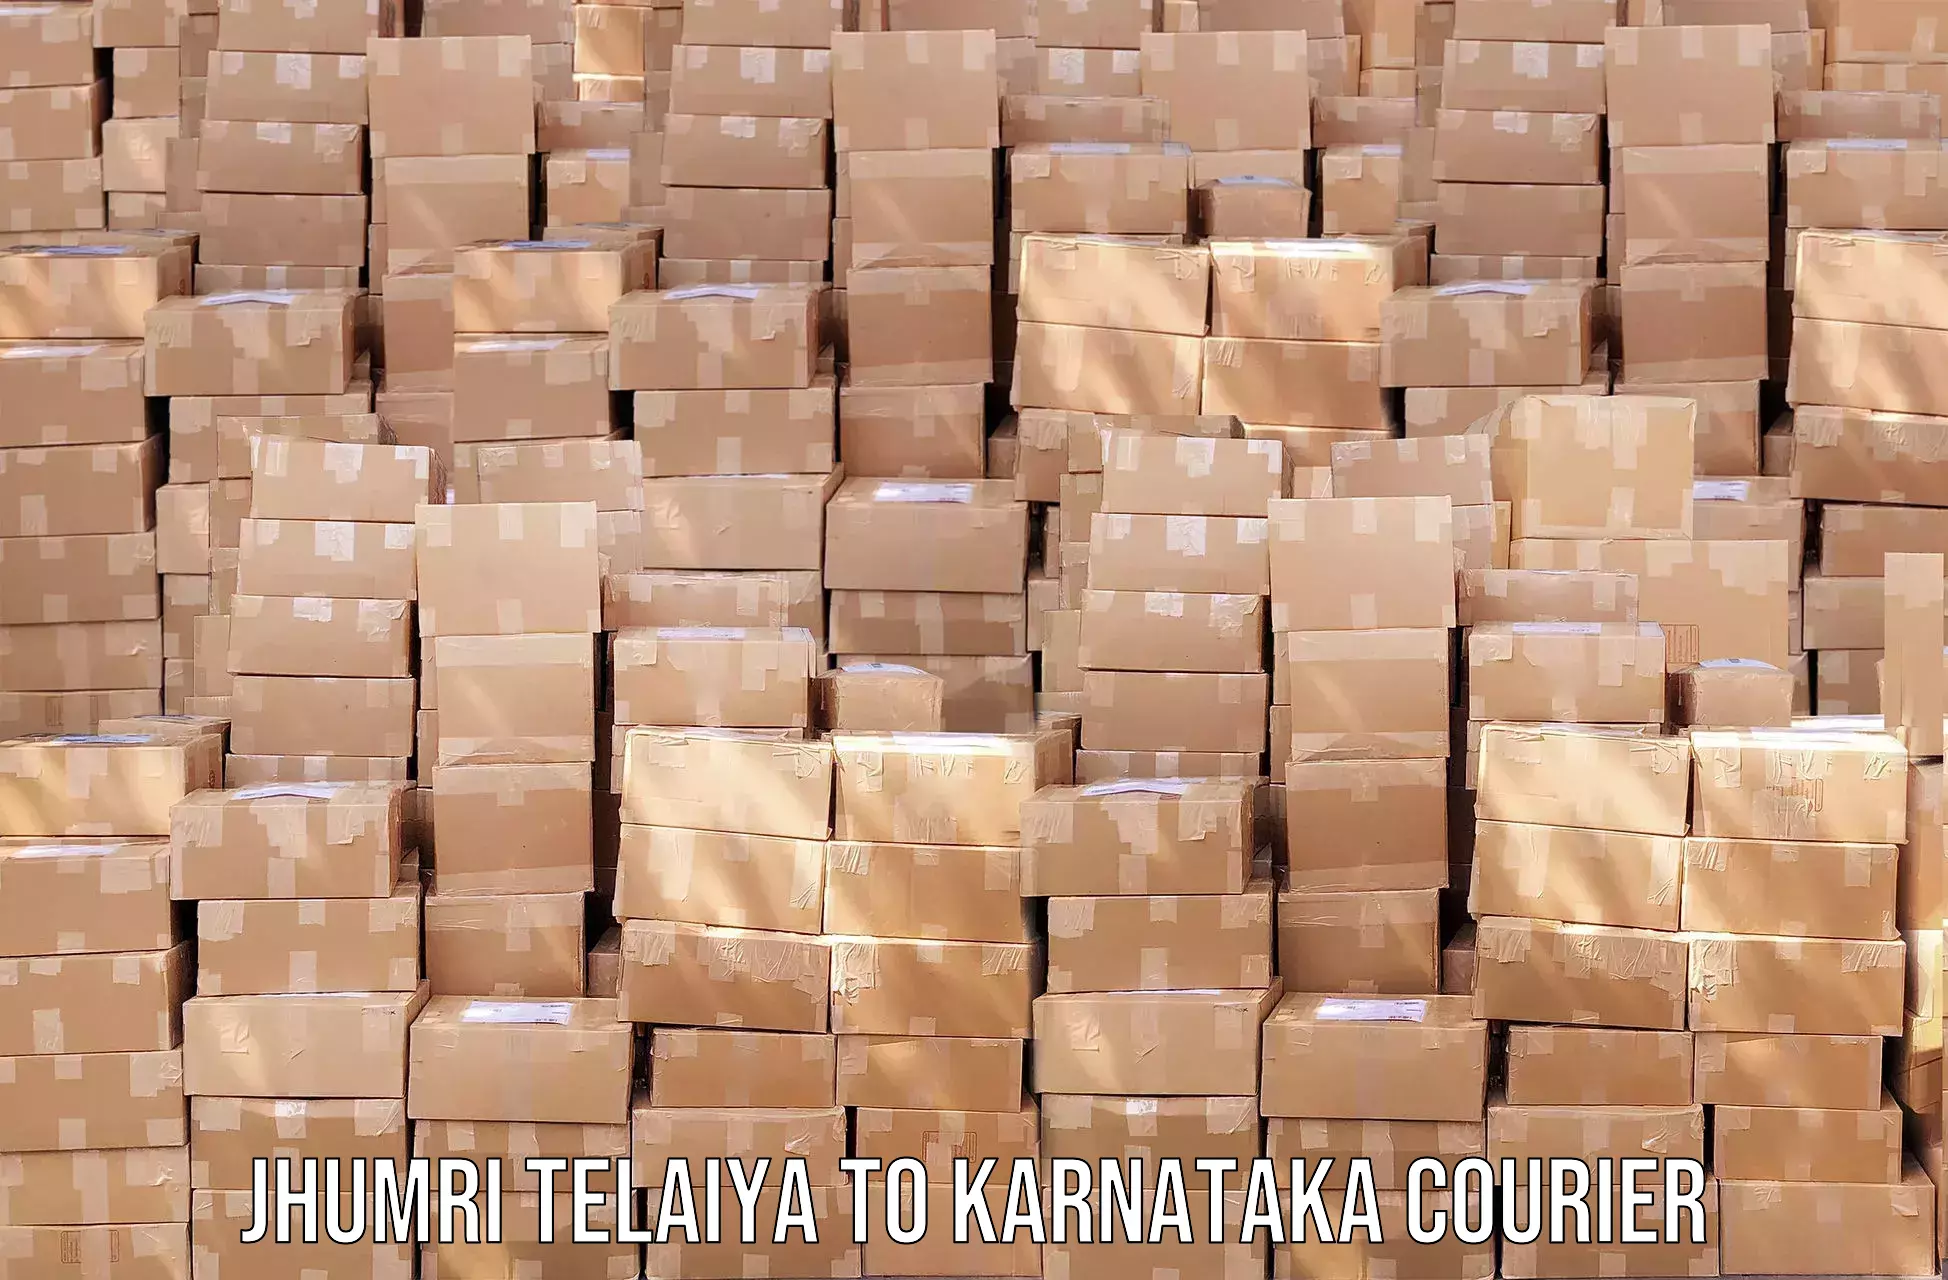 Courier service innovation Jhumri Telaiya to Ullal